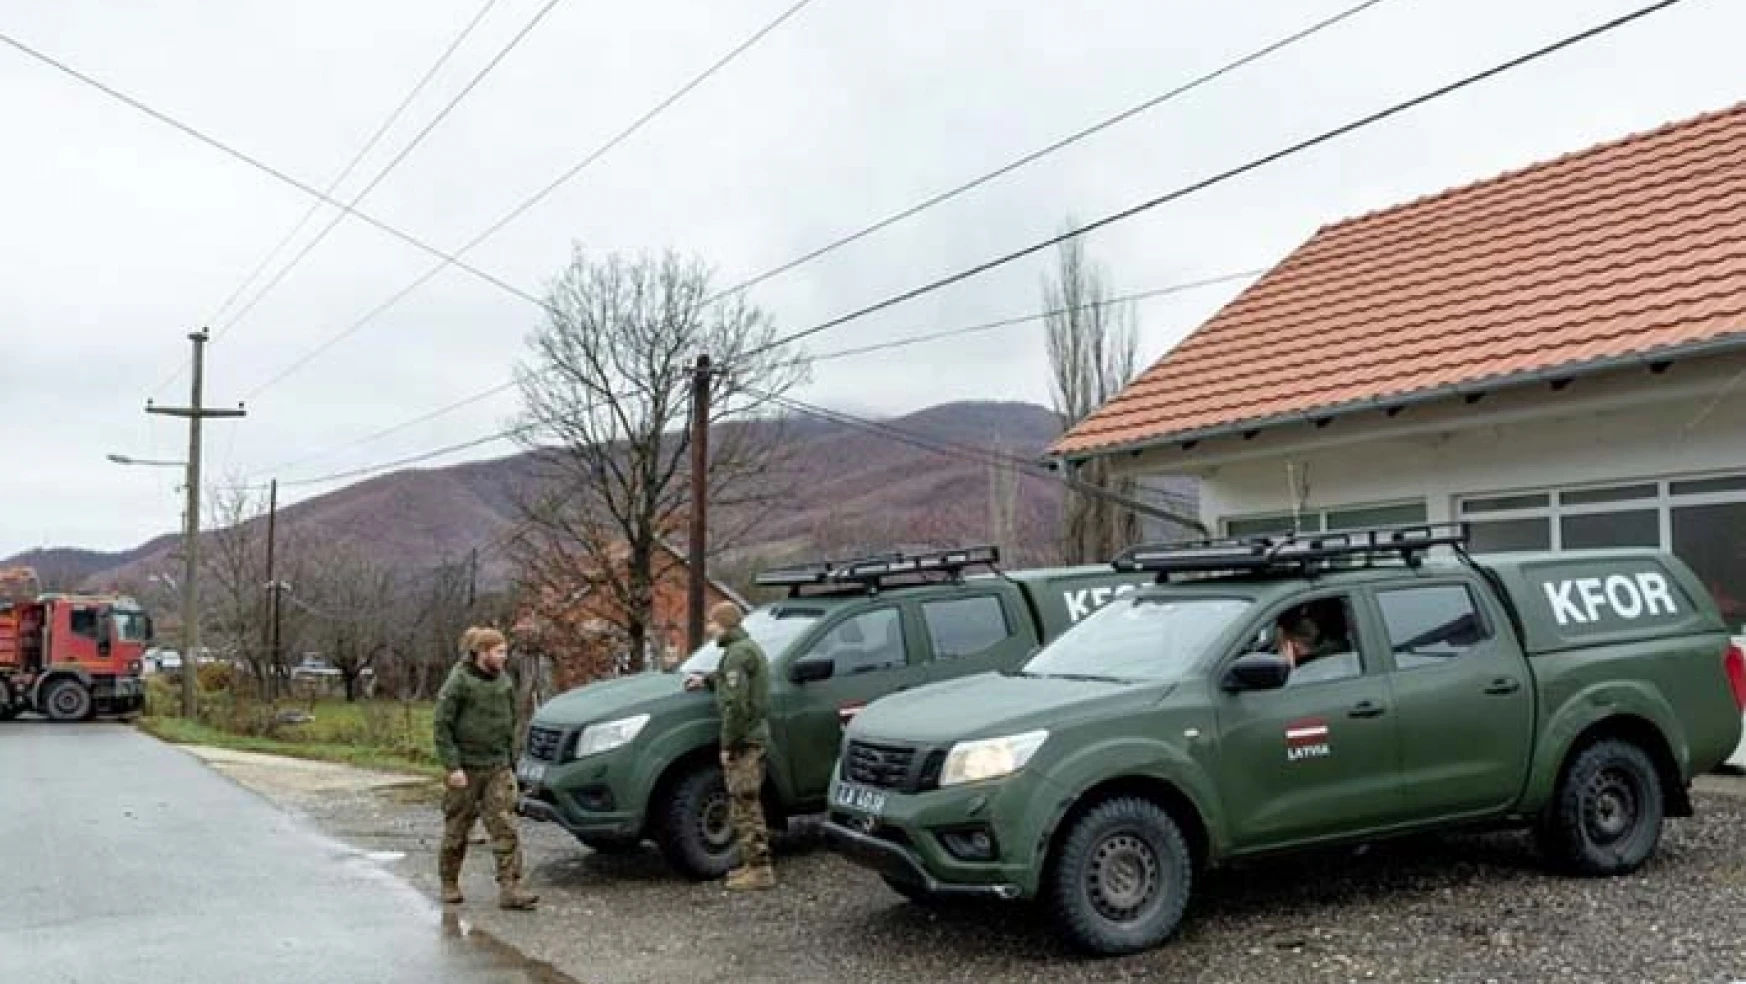 NATO'nun Kosova'daki Barış Gücü KFOR'dan 'silah sesleri' açıklaması